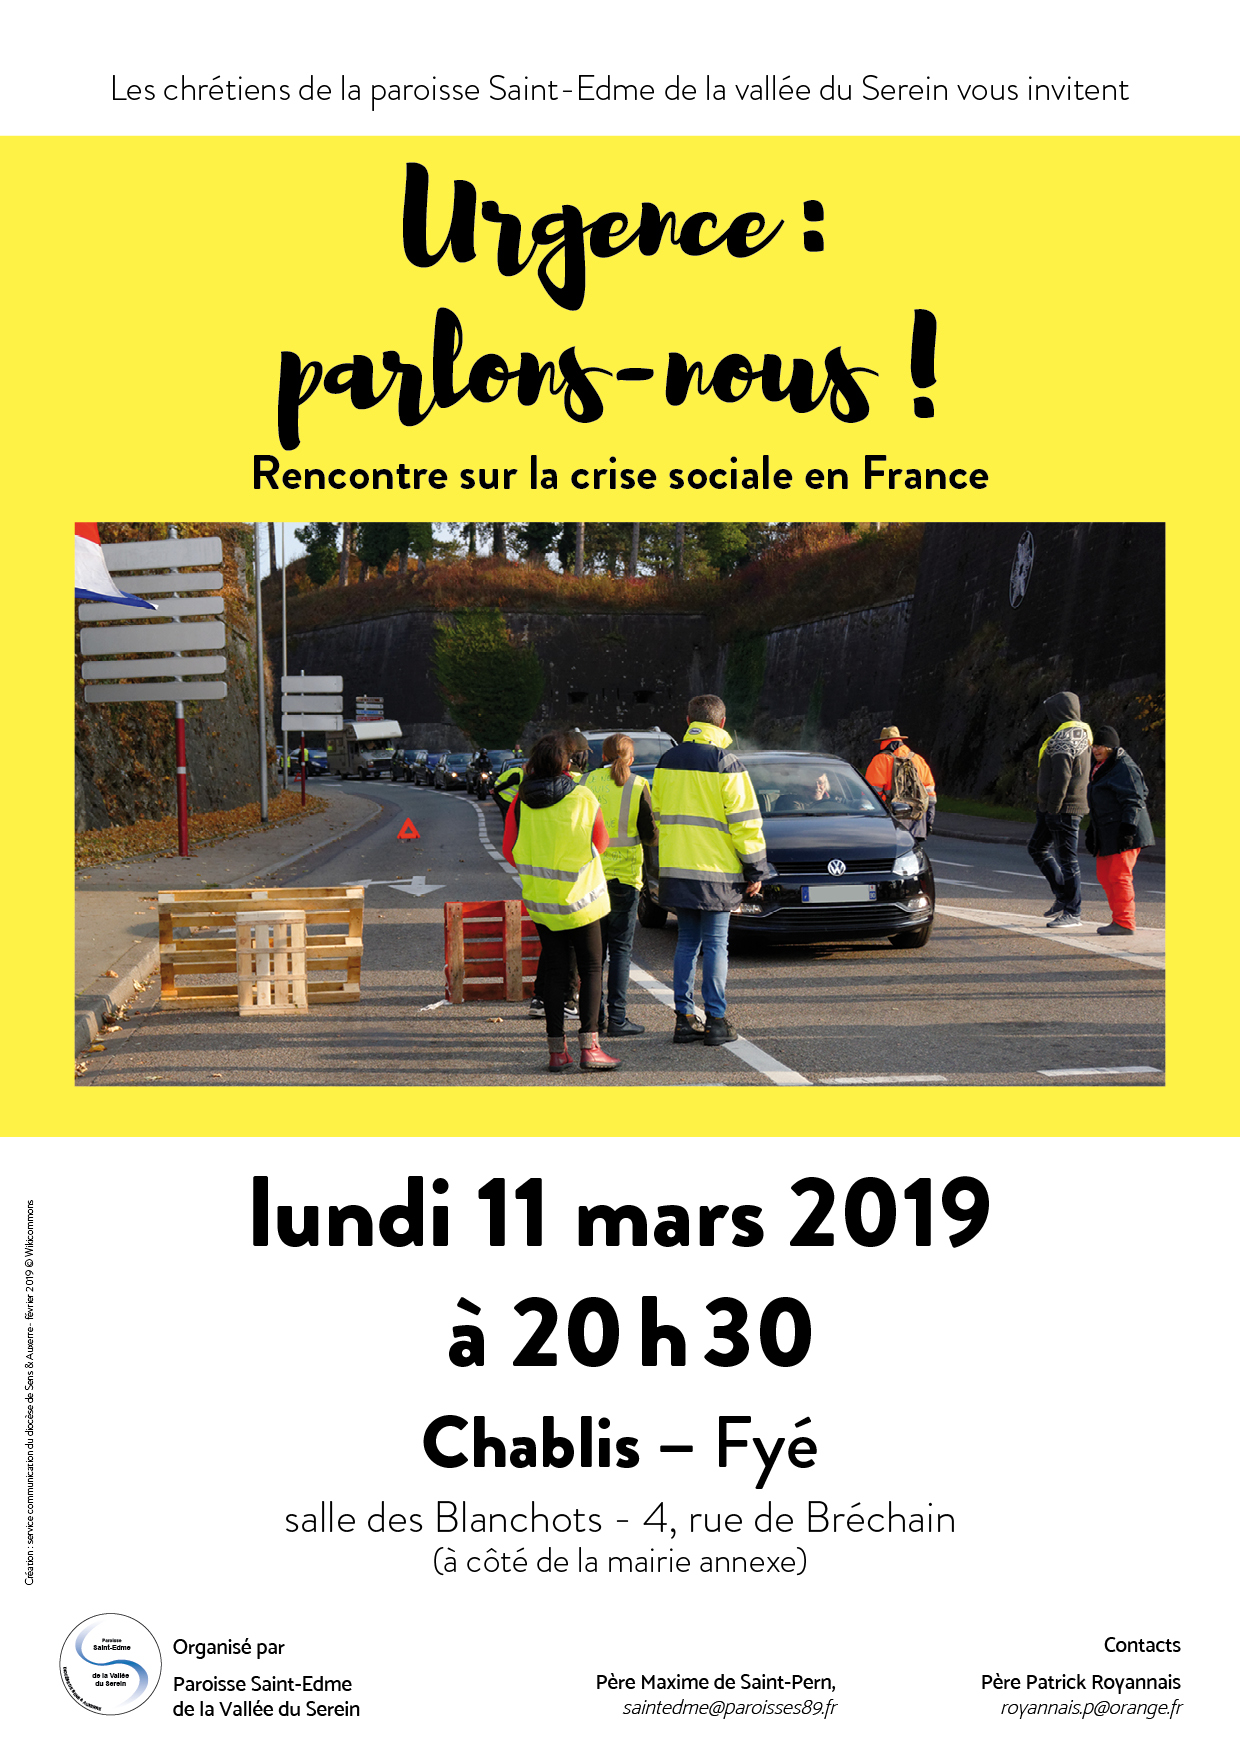 Urgence : parlons-nous ! Rencontre sur la crise sociale le 11 mars 2019 à Chablis-Fyé (72)